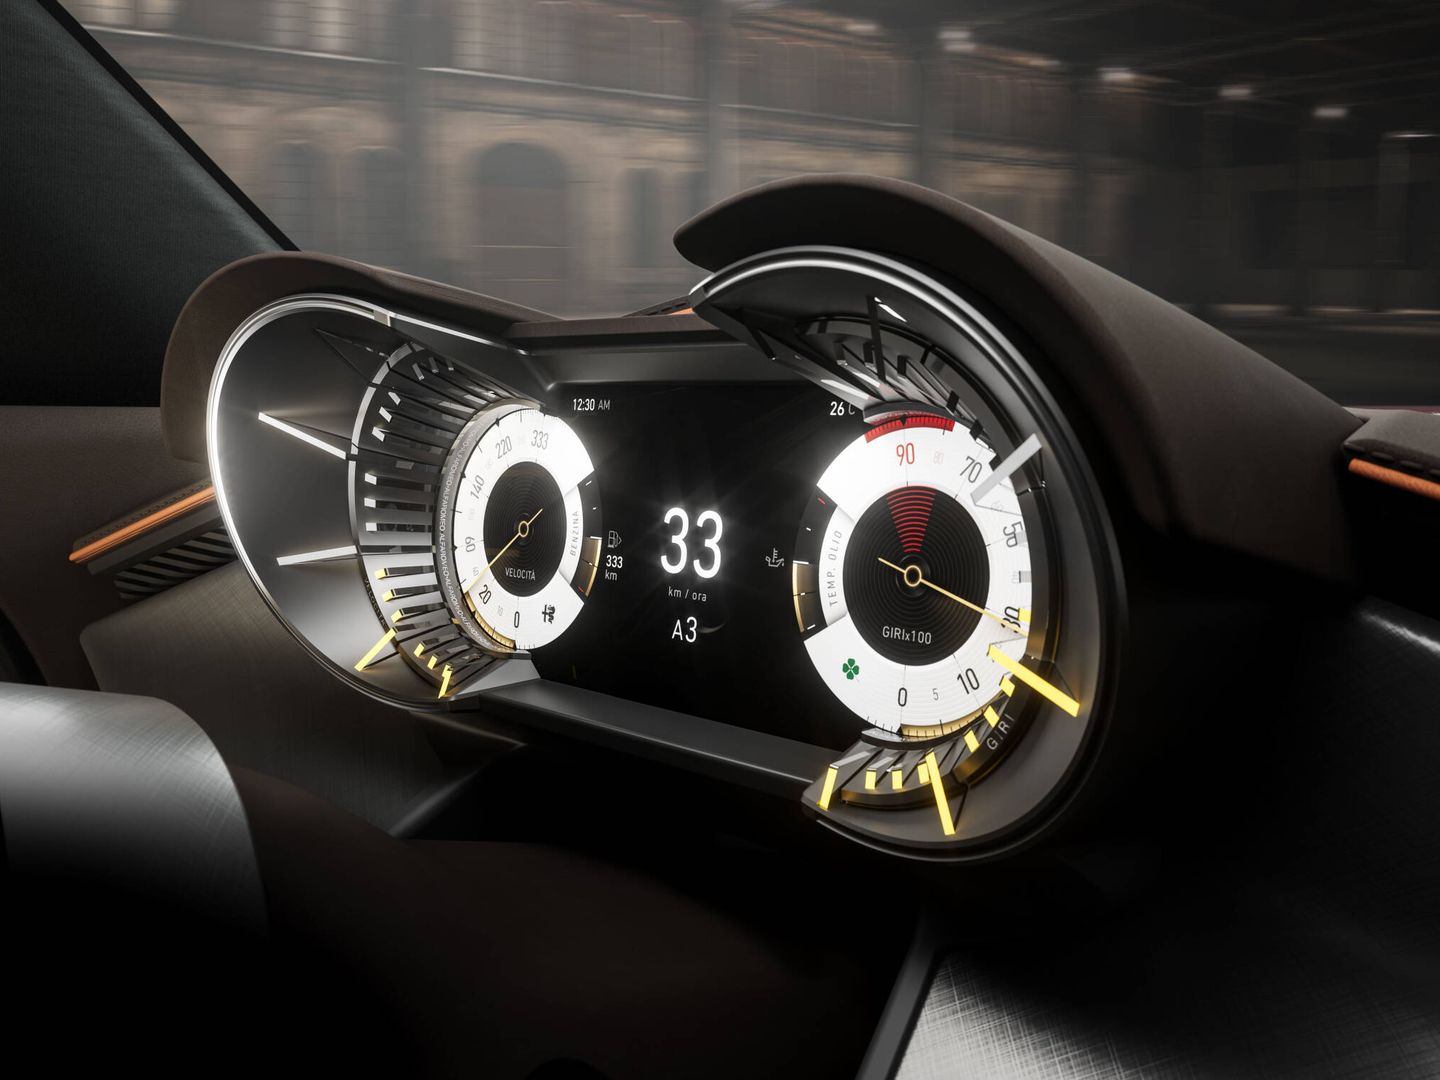 La única pantalla digital del vehículo es el cuadro de instrumentos con efectos 3D.